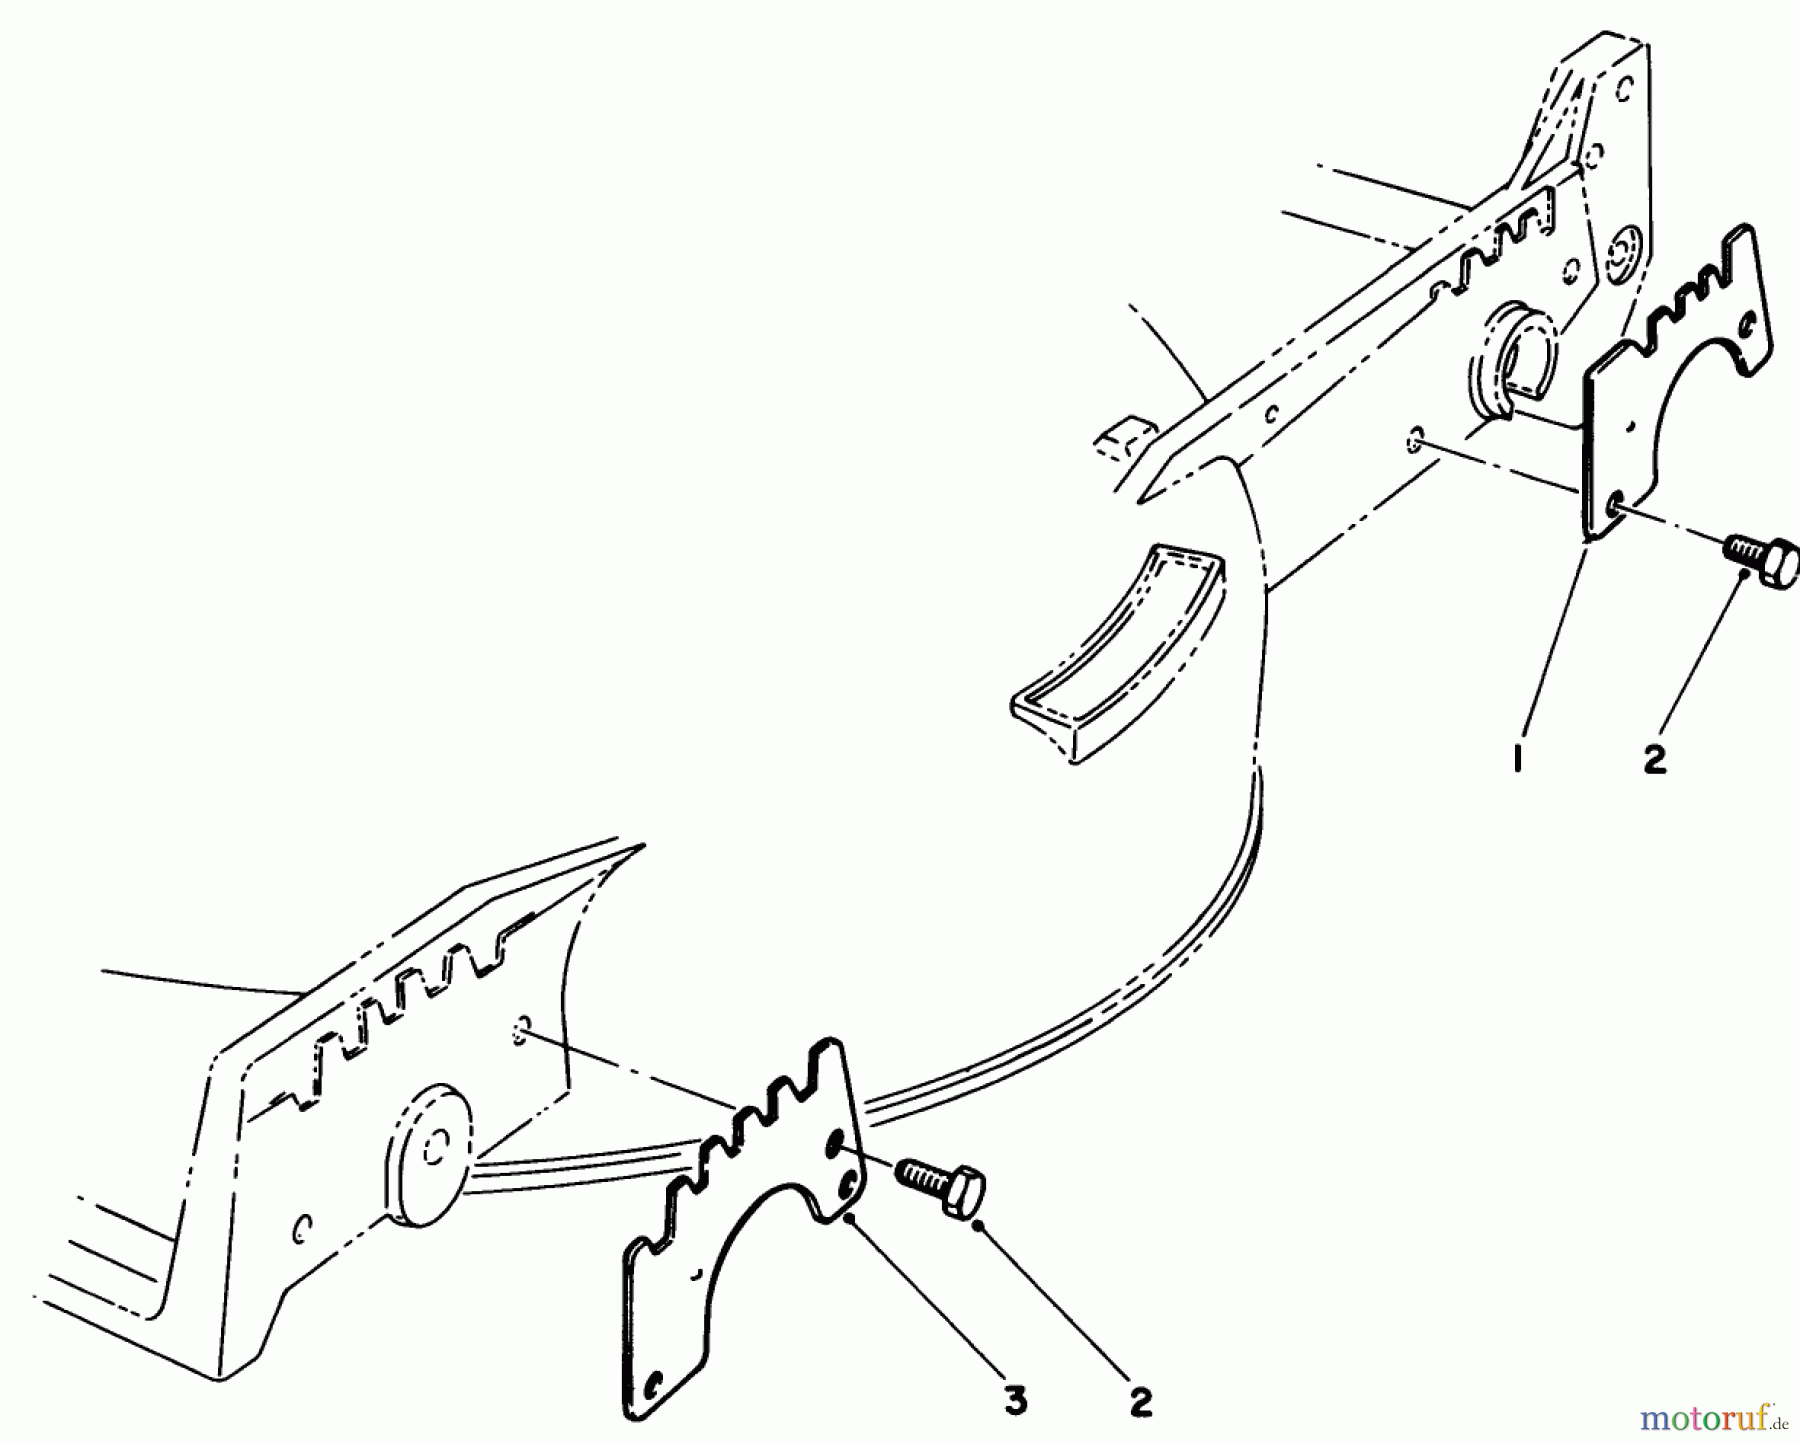  Toro Neu Mowers, Walk-Behind Seite 1 20622C - Toro Lawnmower, 1987 (7000001-7999999) WEAR PLATE KIT NO. 49-4080 (OPTIONAL)